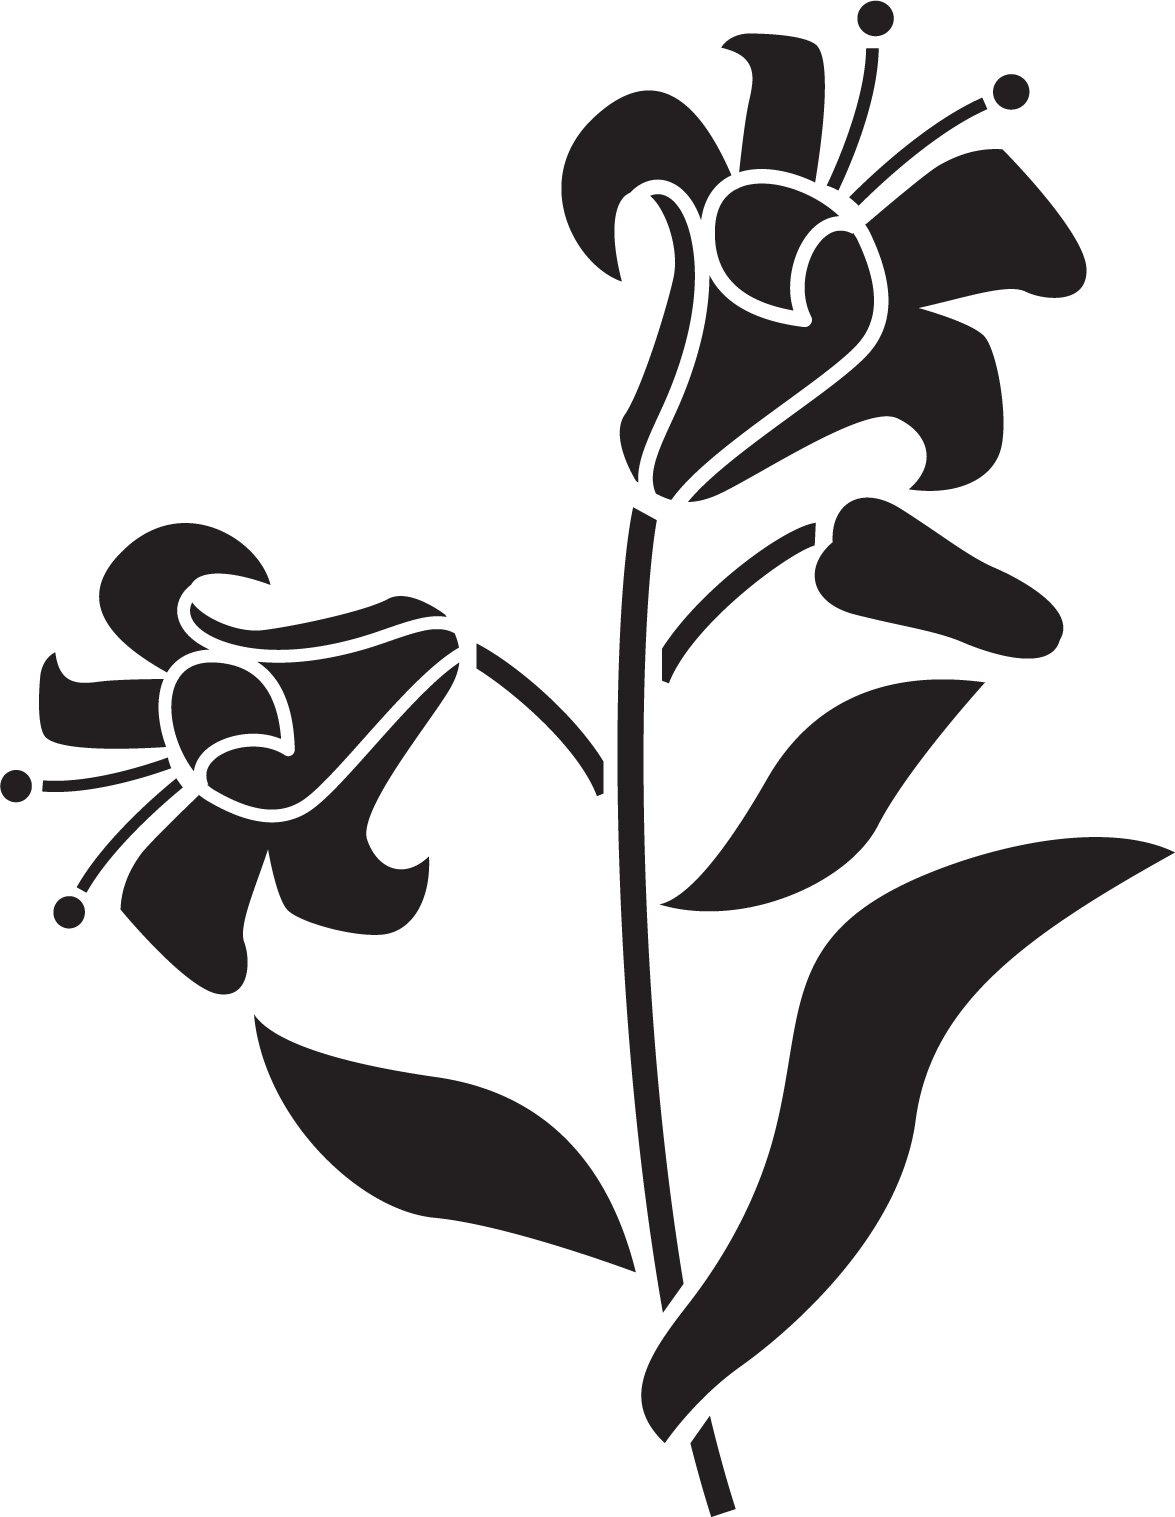 百合 ゆり の花の画像 イラスト フリー素材 No 103 白黒 葉 ユリ